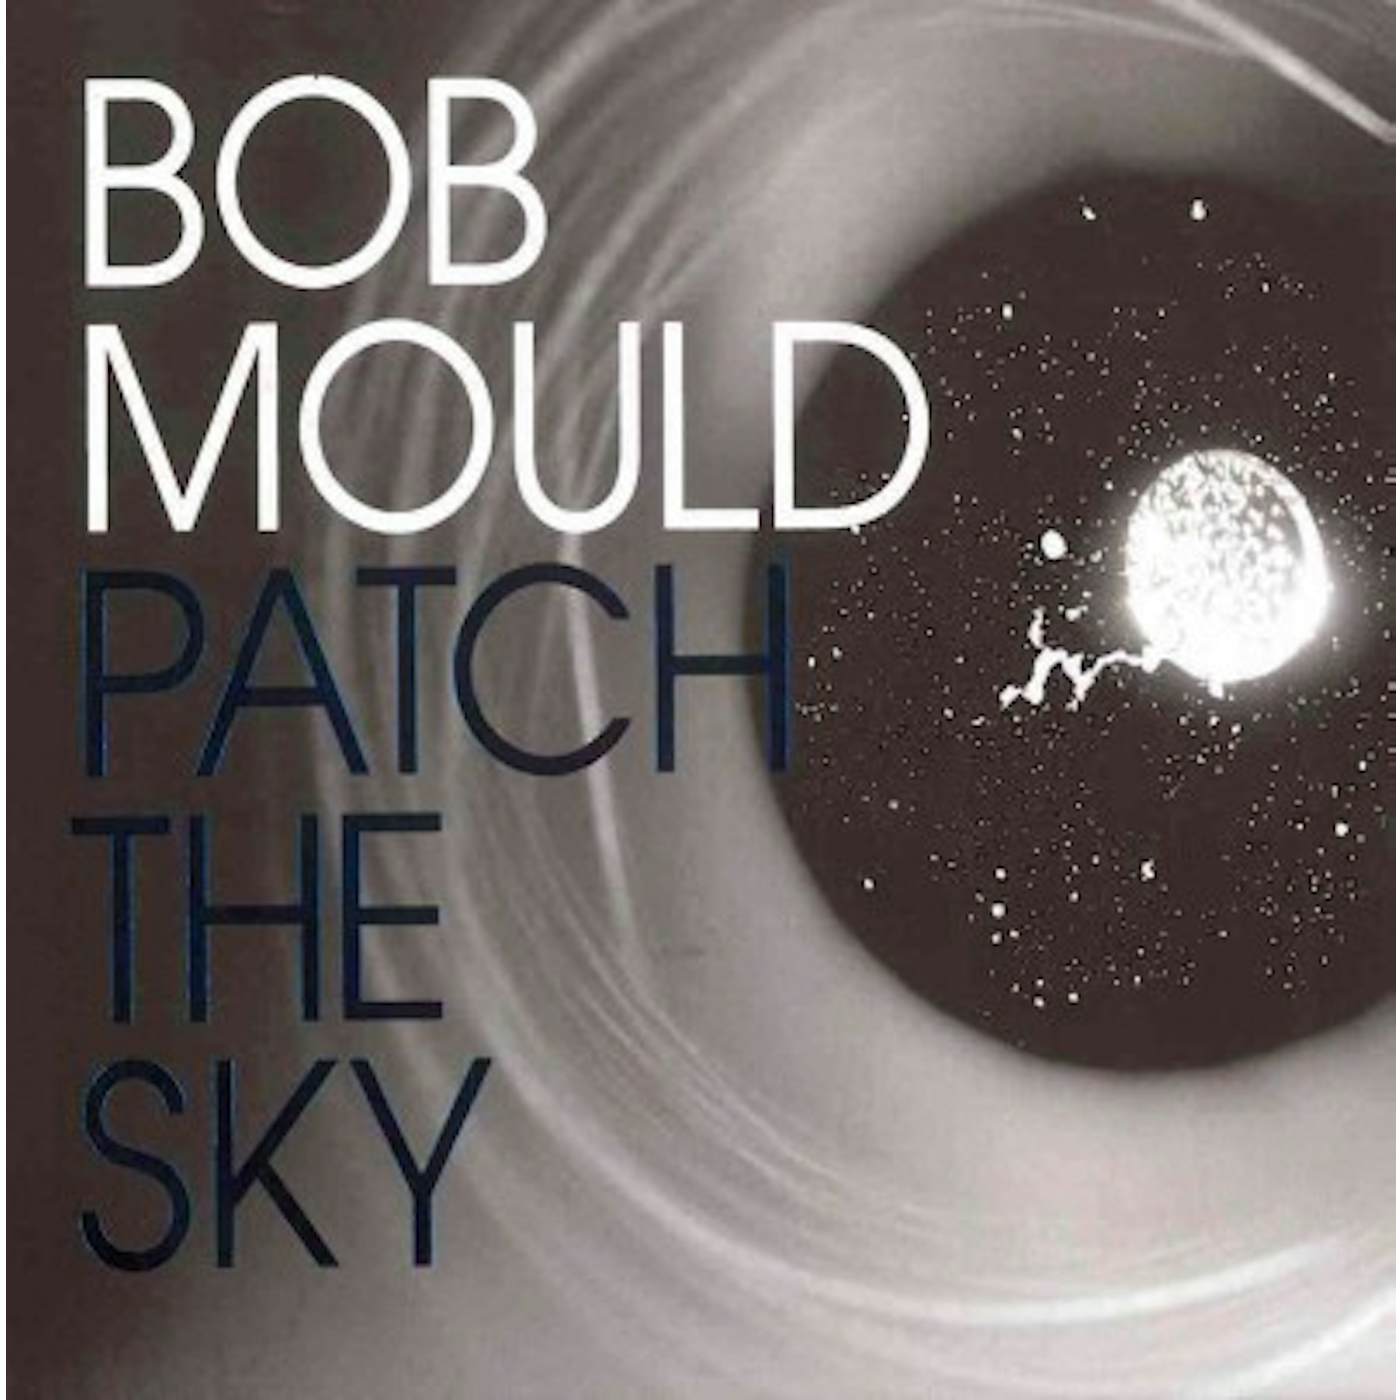 Bob Mould PATCH THE SKY CD